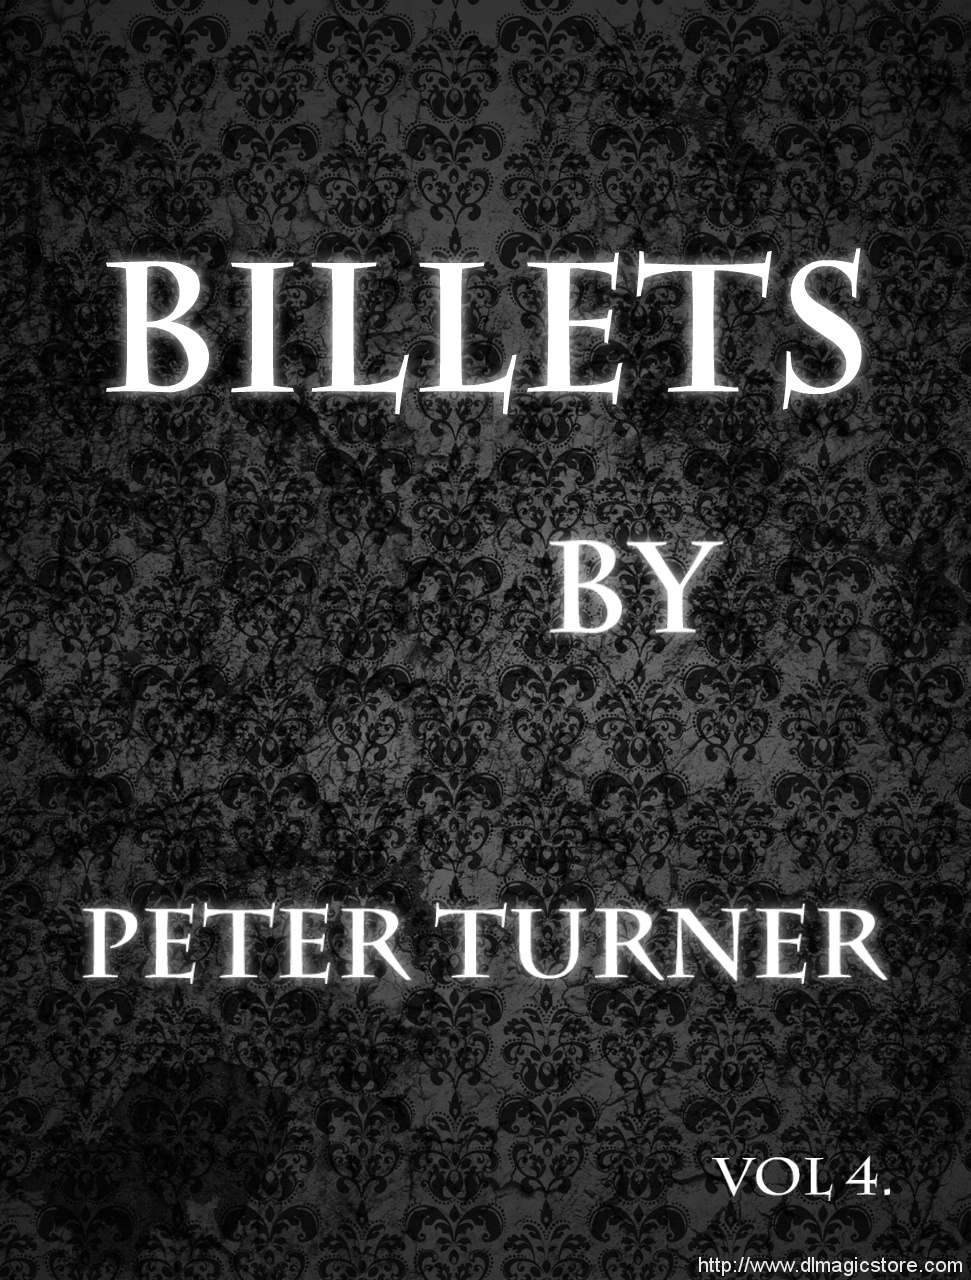 Vol 4 Billets by Peter Turner Instant Download